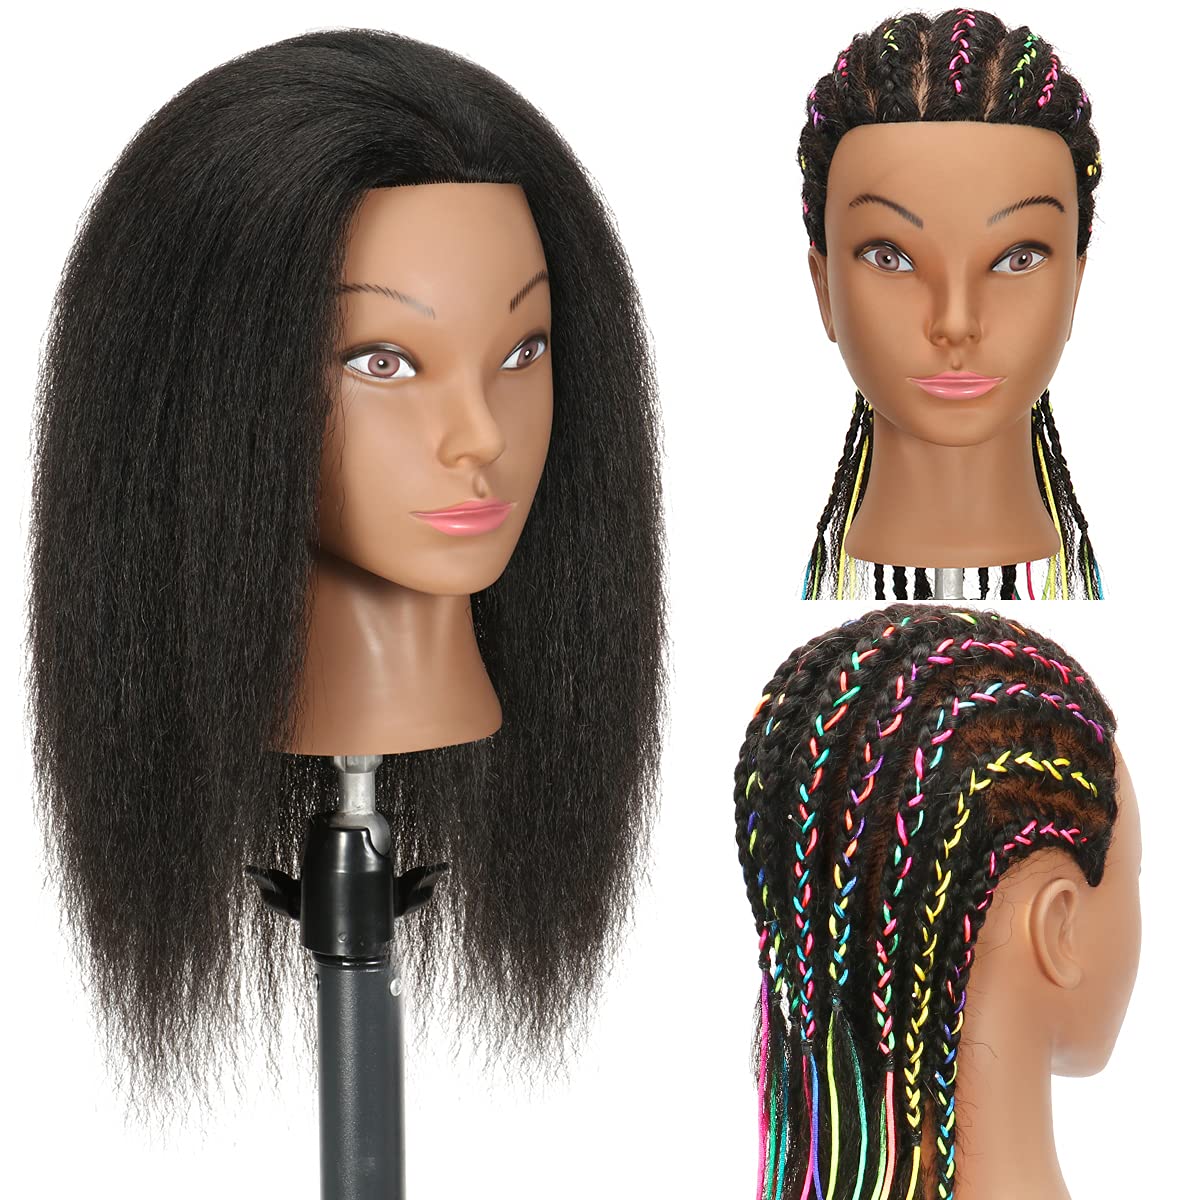 30 Training Head Mannequin Head With Hair Braid Salon